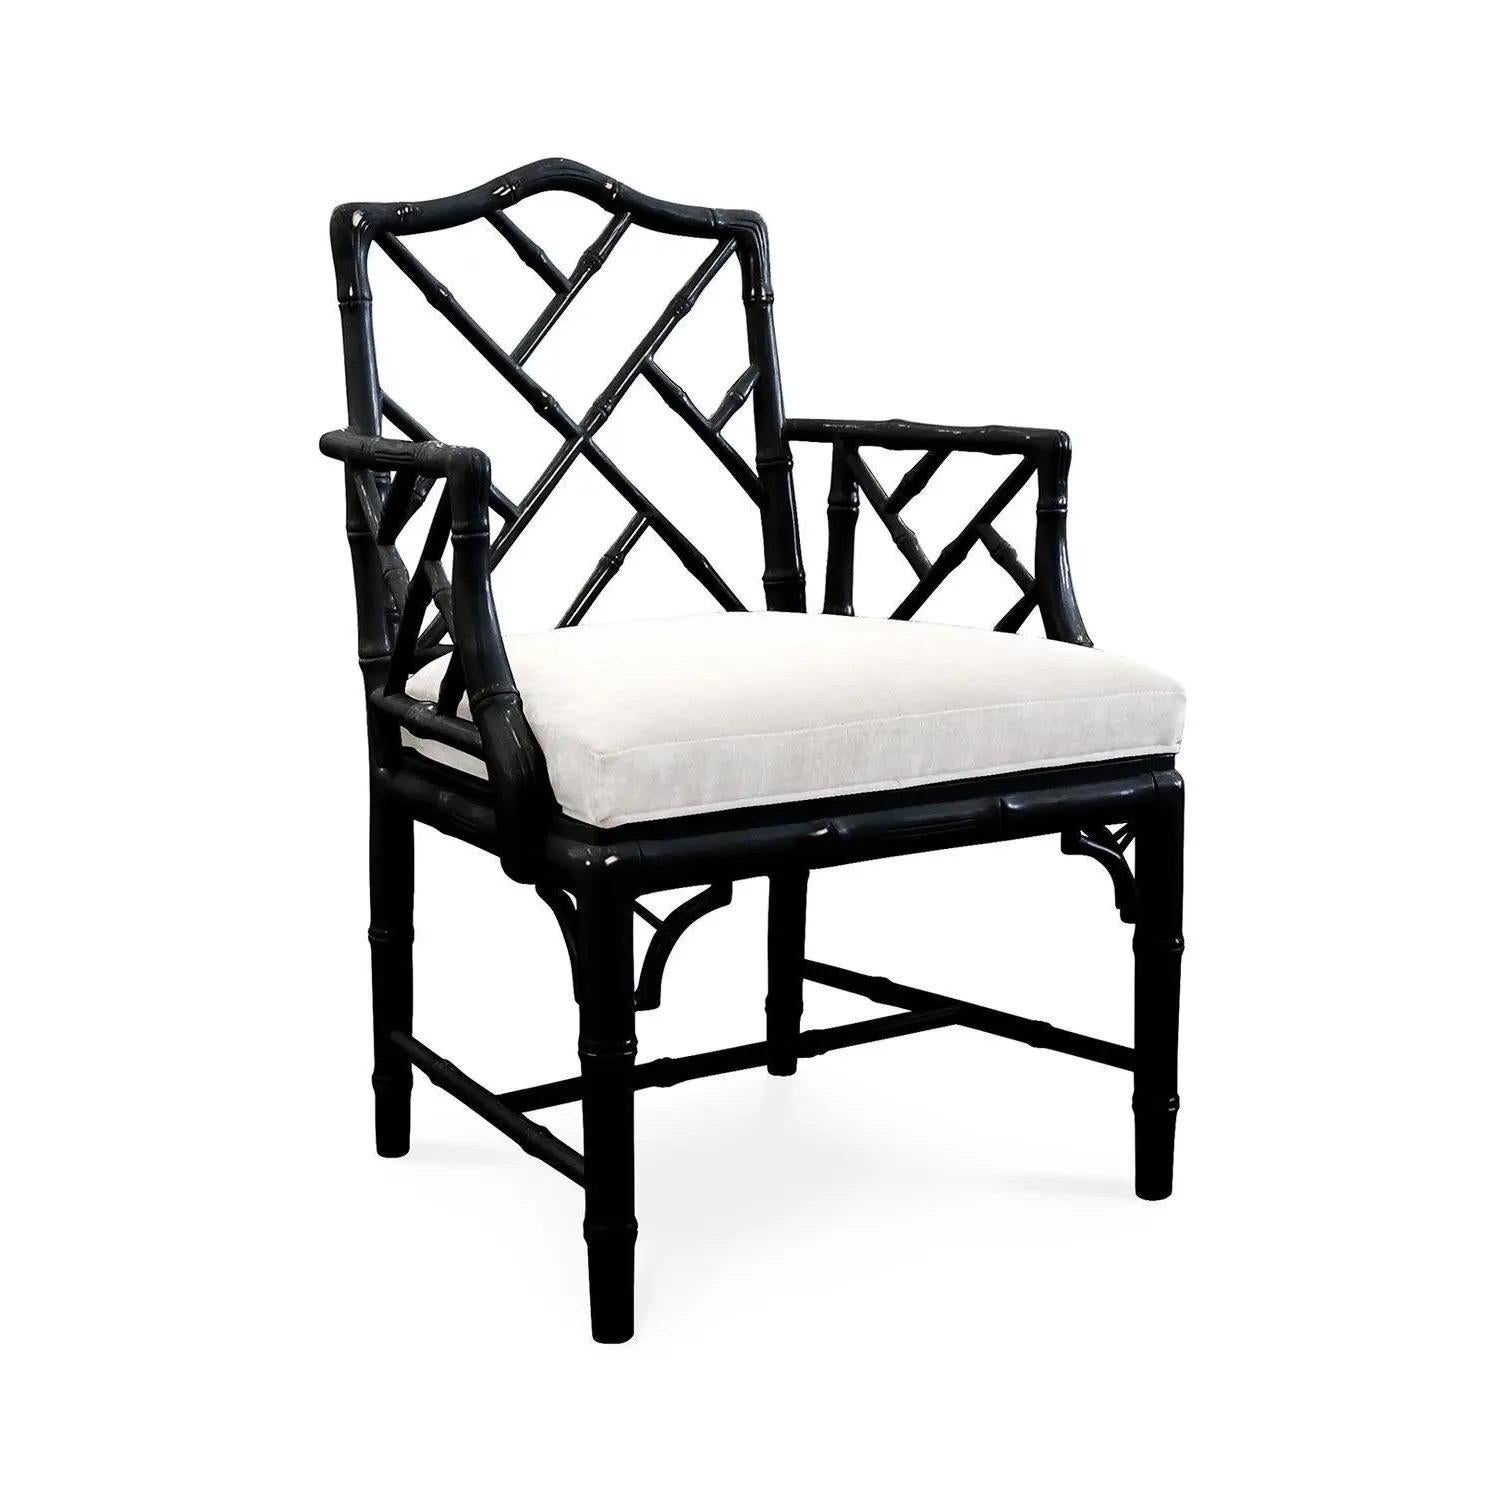 Gelistet ist eine fabelhafte, Paar schwarz lackiert faux Bambus chinesischen Chippendale Sessel mit weißem Leinen gepolstert Sitze, von Jonathan Adler. Die Stühle waren jahrelang ein fester Bestandteil von Adlers Designproduktion und wurden vor